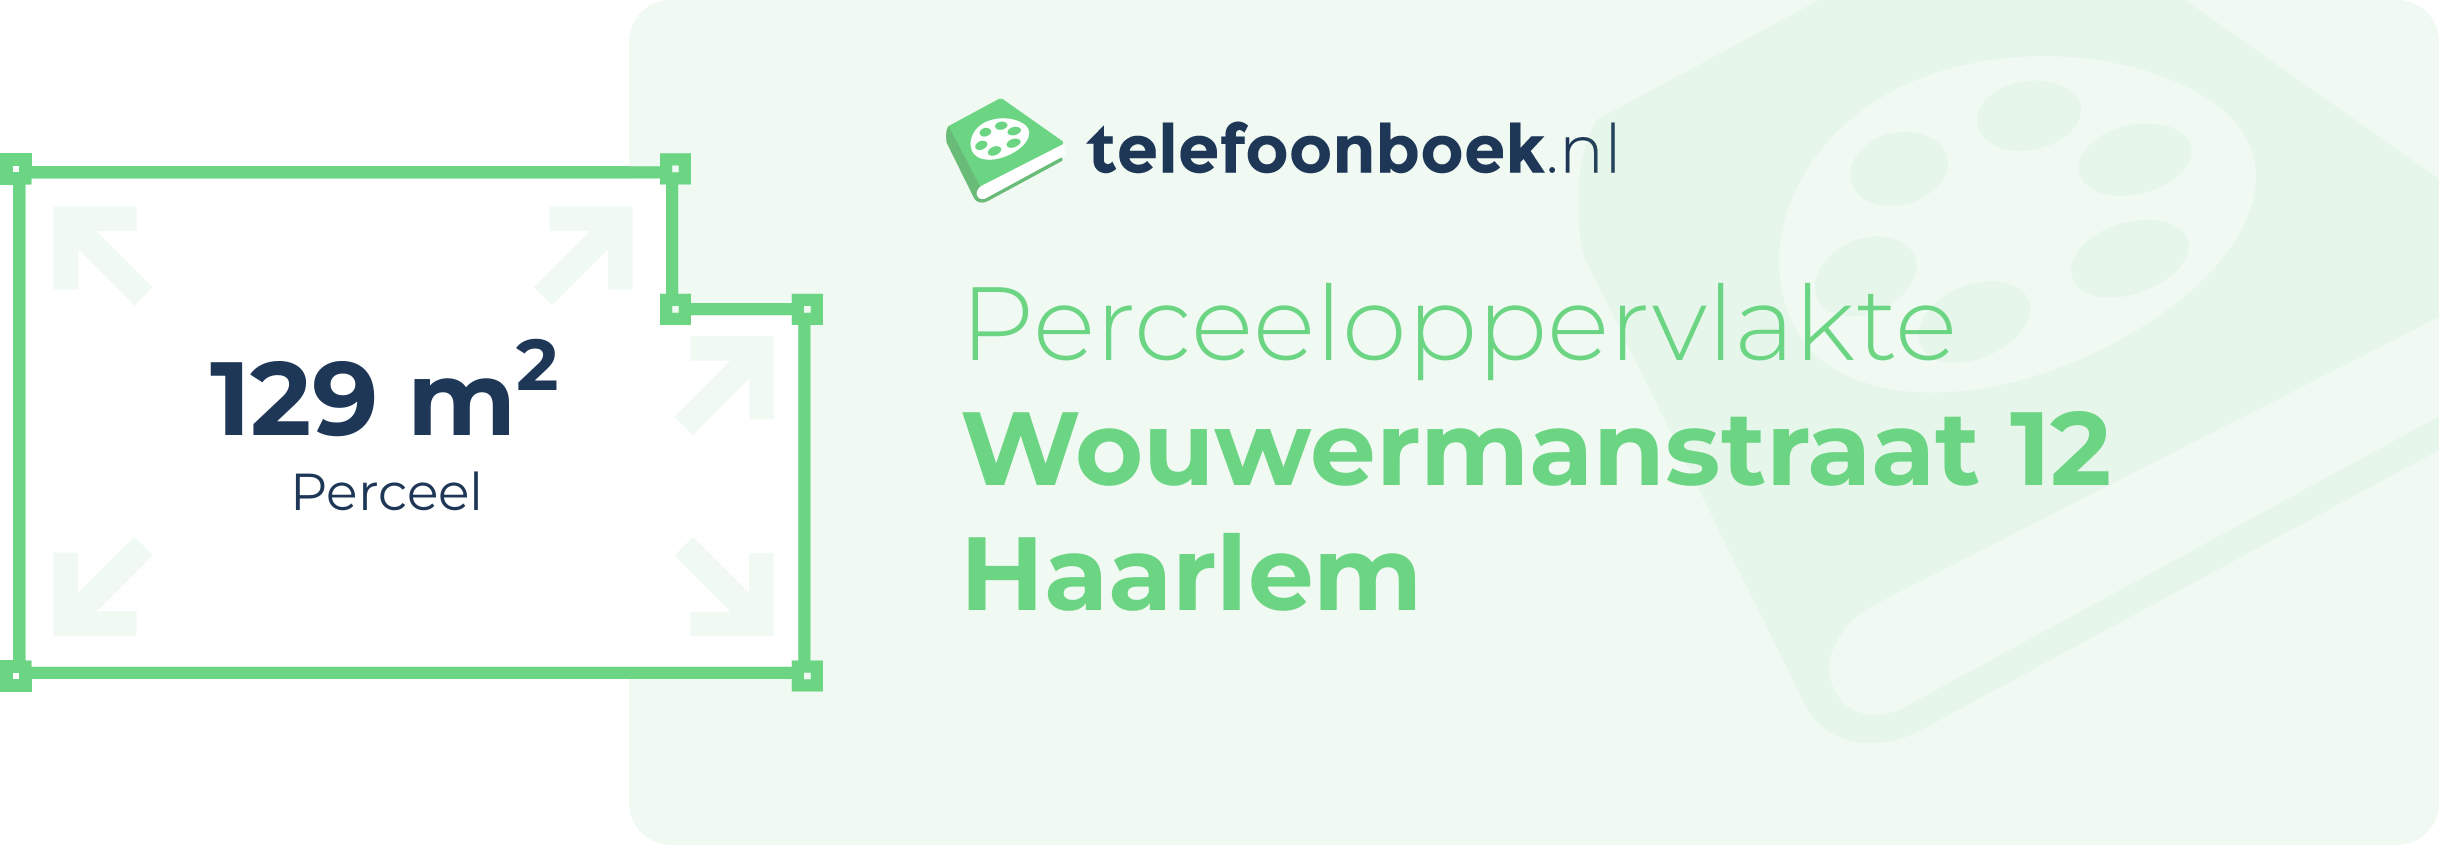 Perceeloppervlakte Wouwermanstraat 12 Haarlem